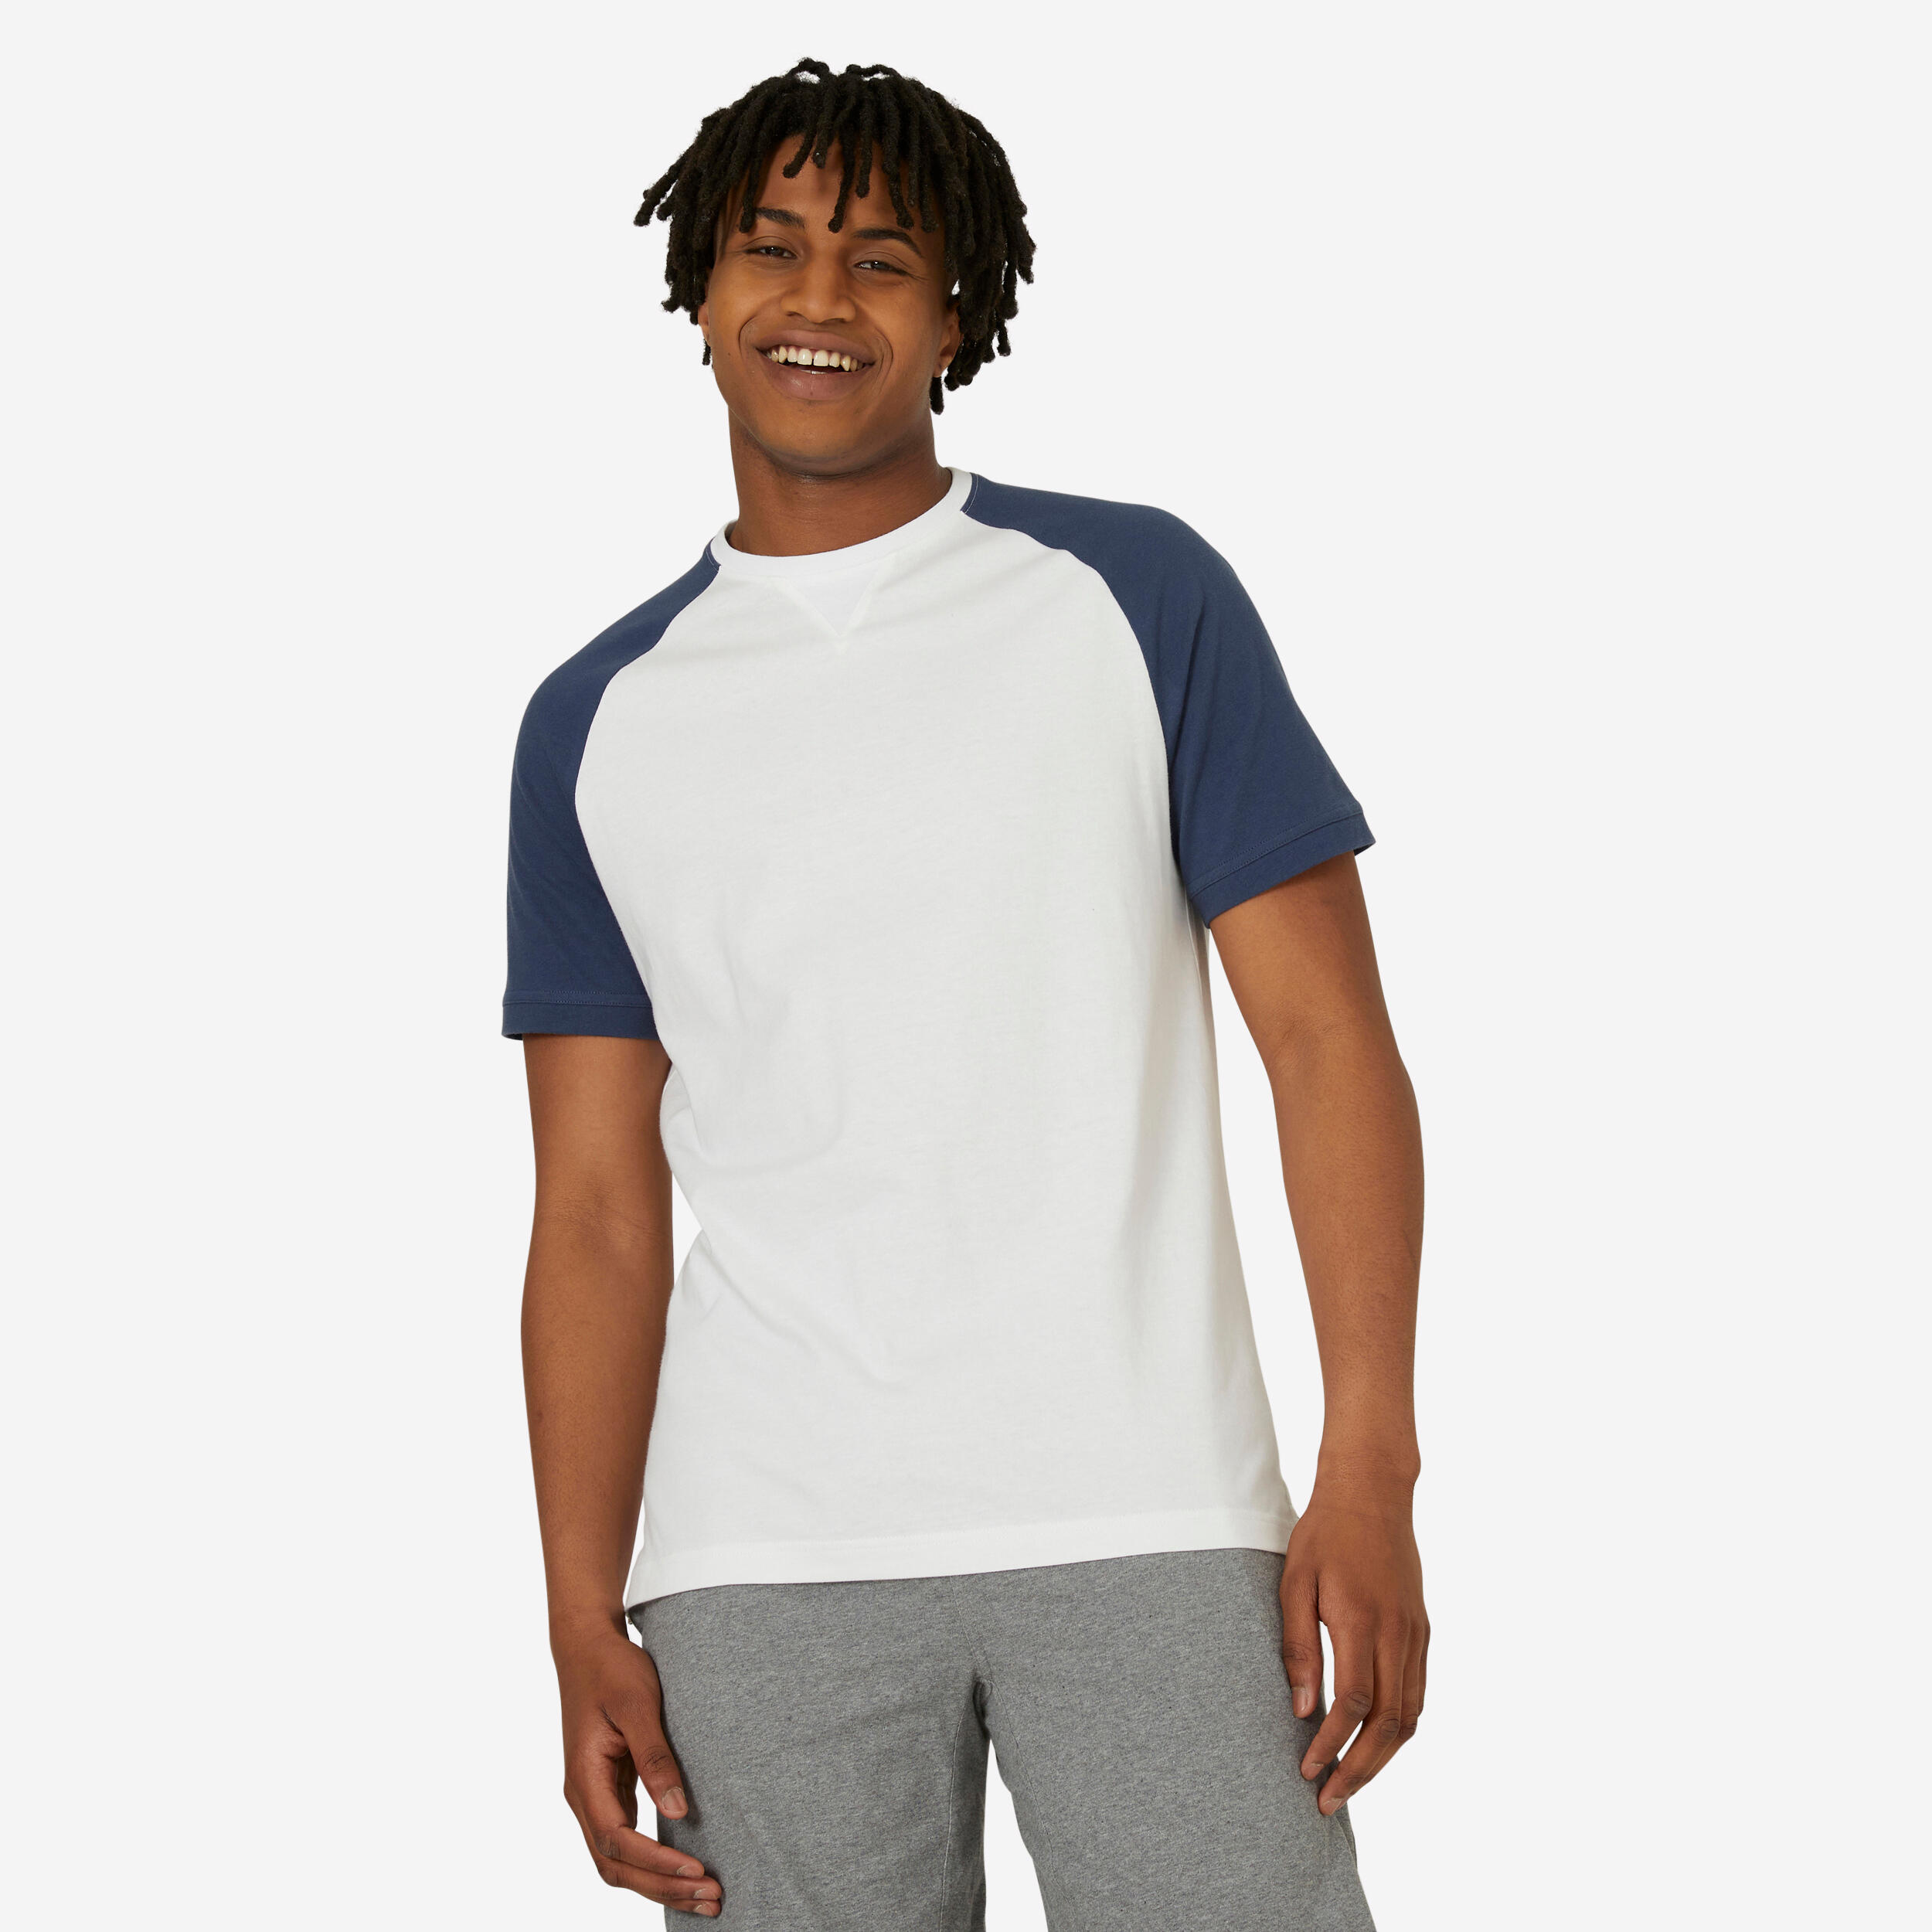 Men's Fitness T-Shirt 520 - White/Blue 1/5